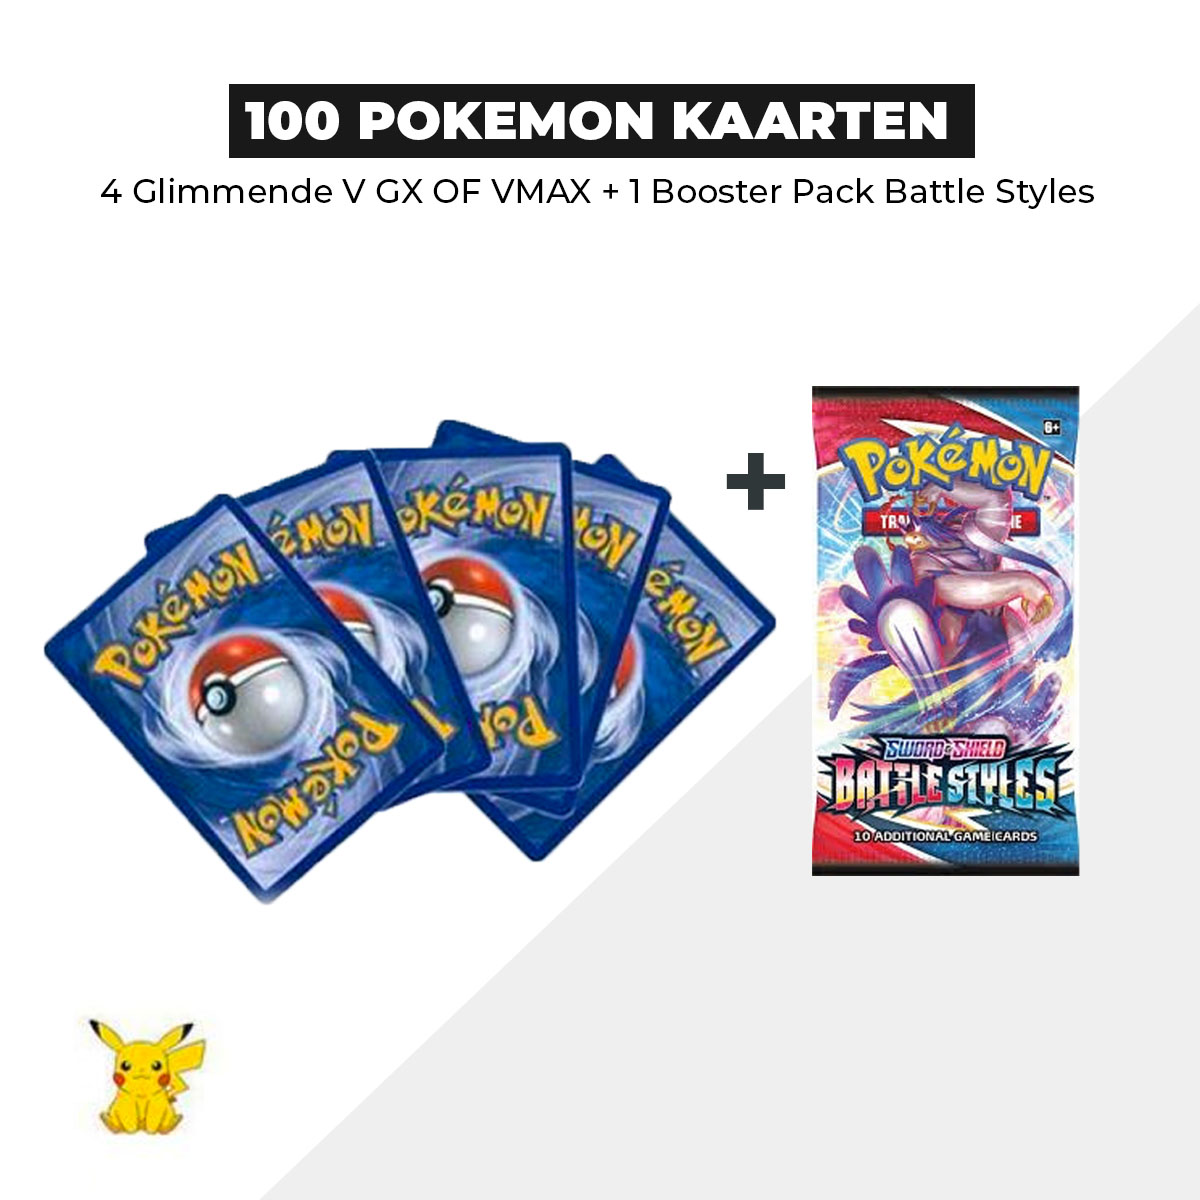 100 Pokémon Kaarten Bundel + 1 Battle Styles Booster pack